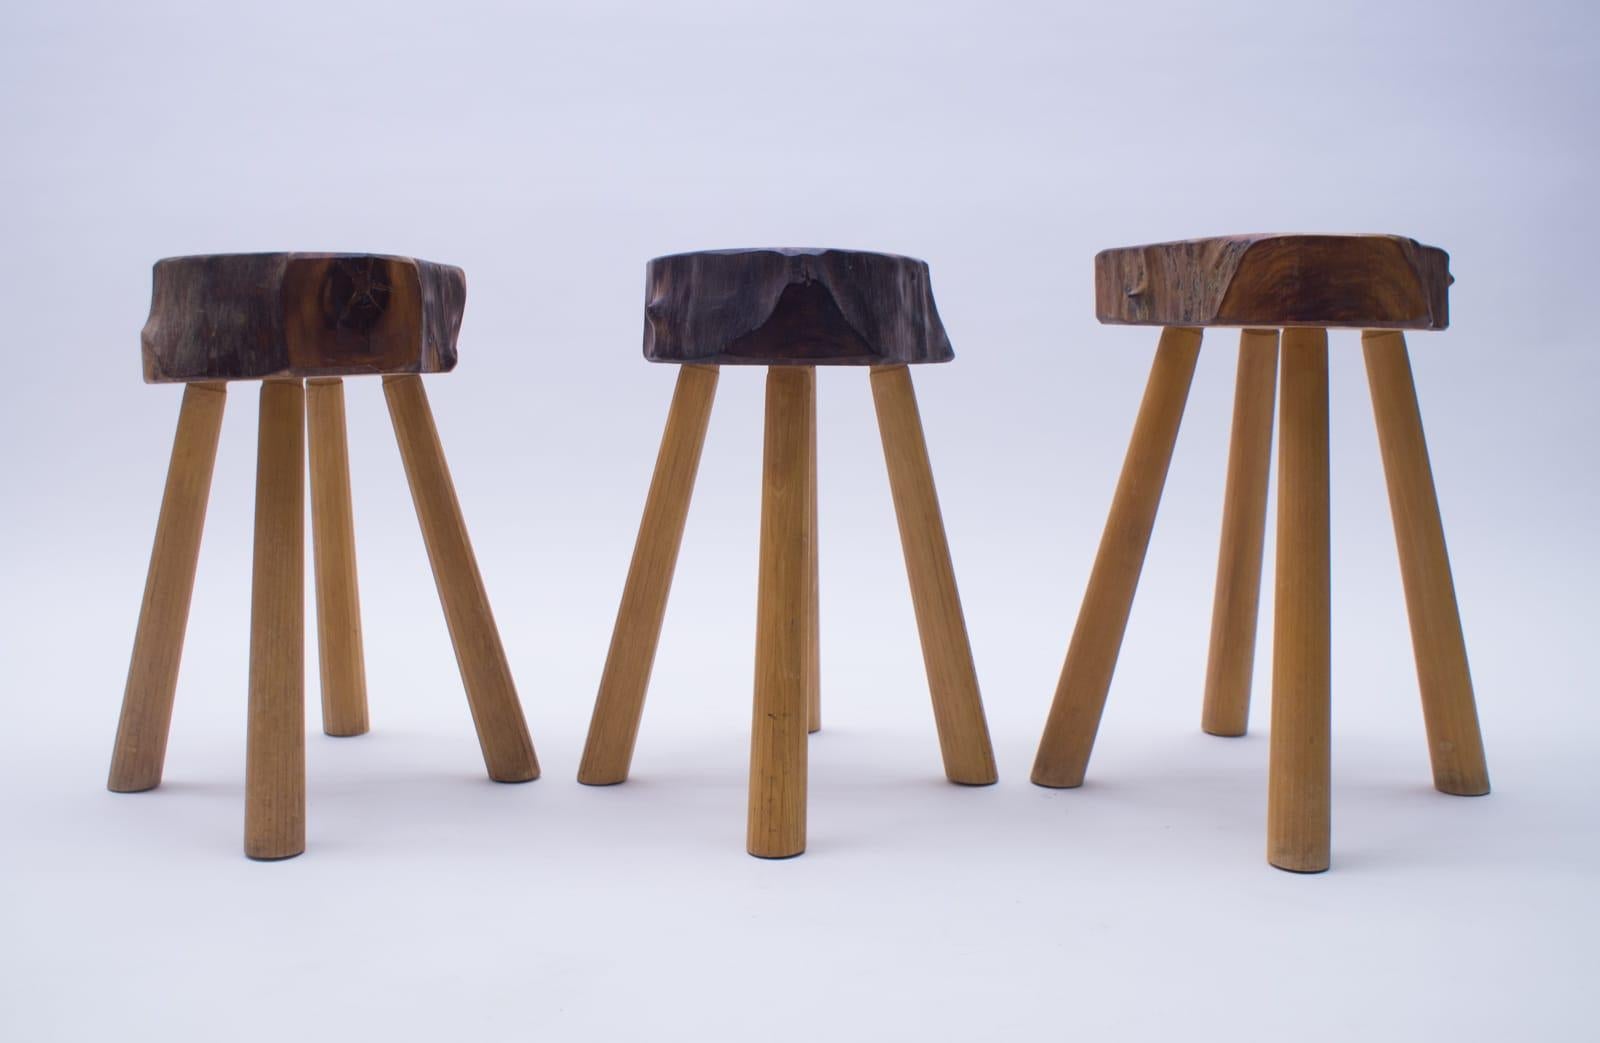 3 leg wooden stools